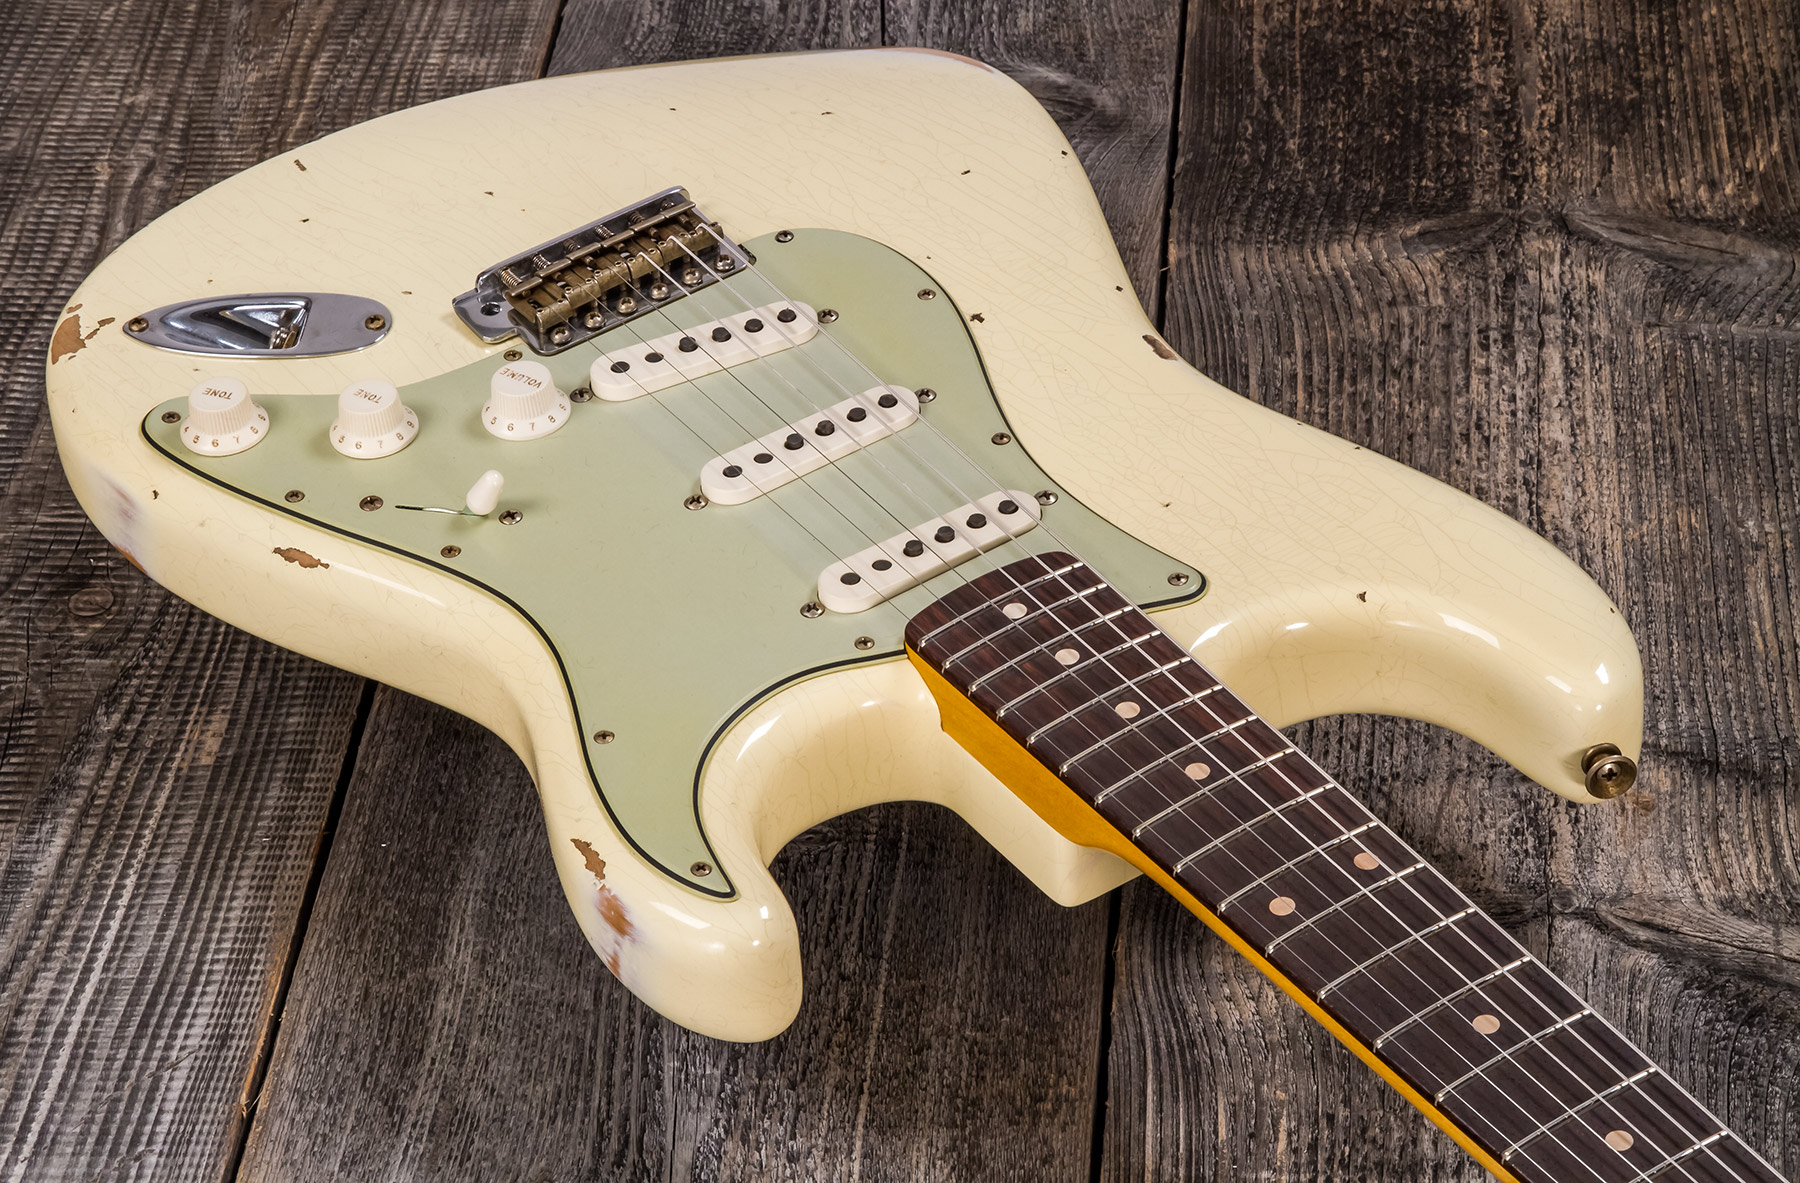 Fender Custom Shop Strat 1959 3s Trem Rw #r117393 - Relic Aged Vintage White - Str shape electric guitar - Variation 2